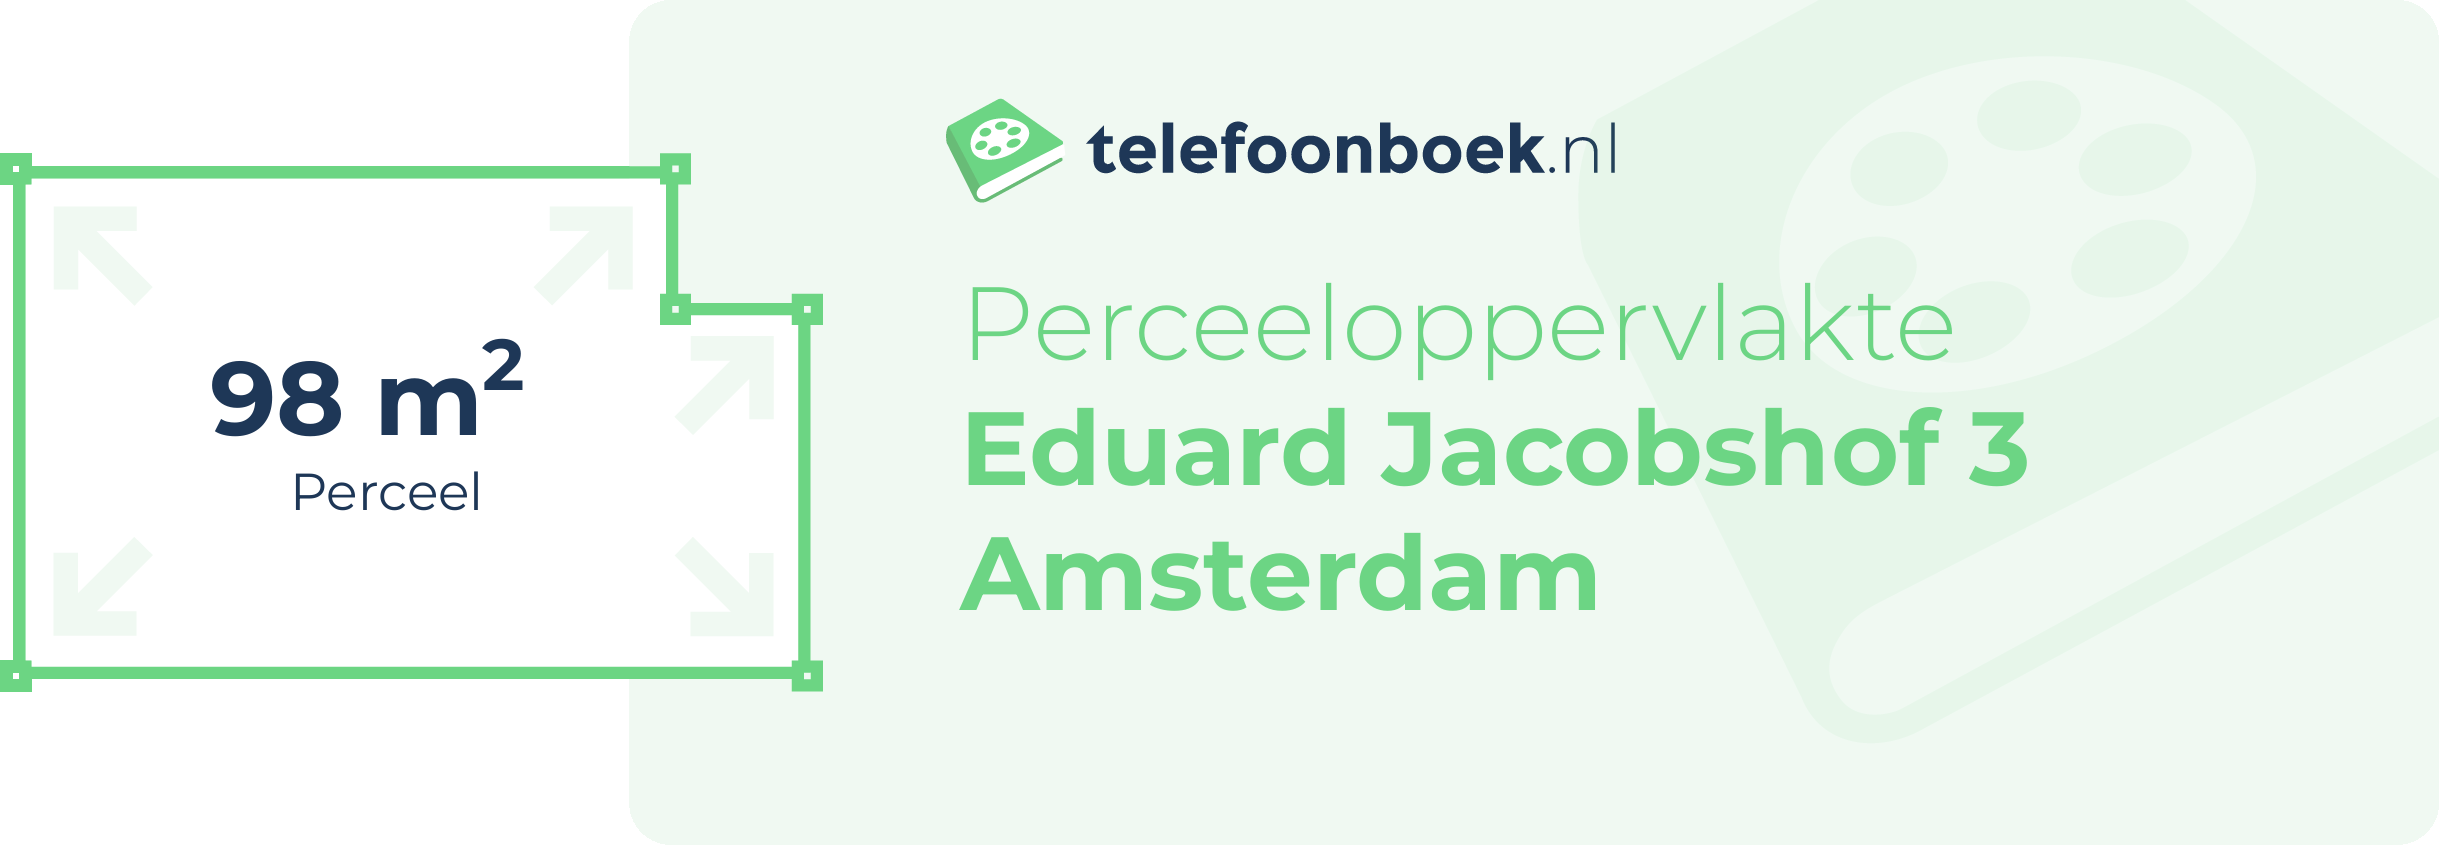 Perceeloppervlakte Eduard Jacobshof 3 Amsterdam